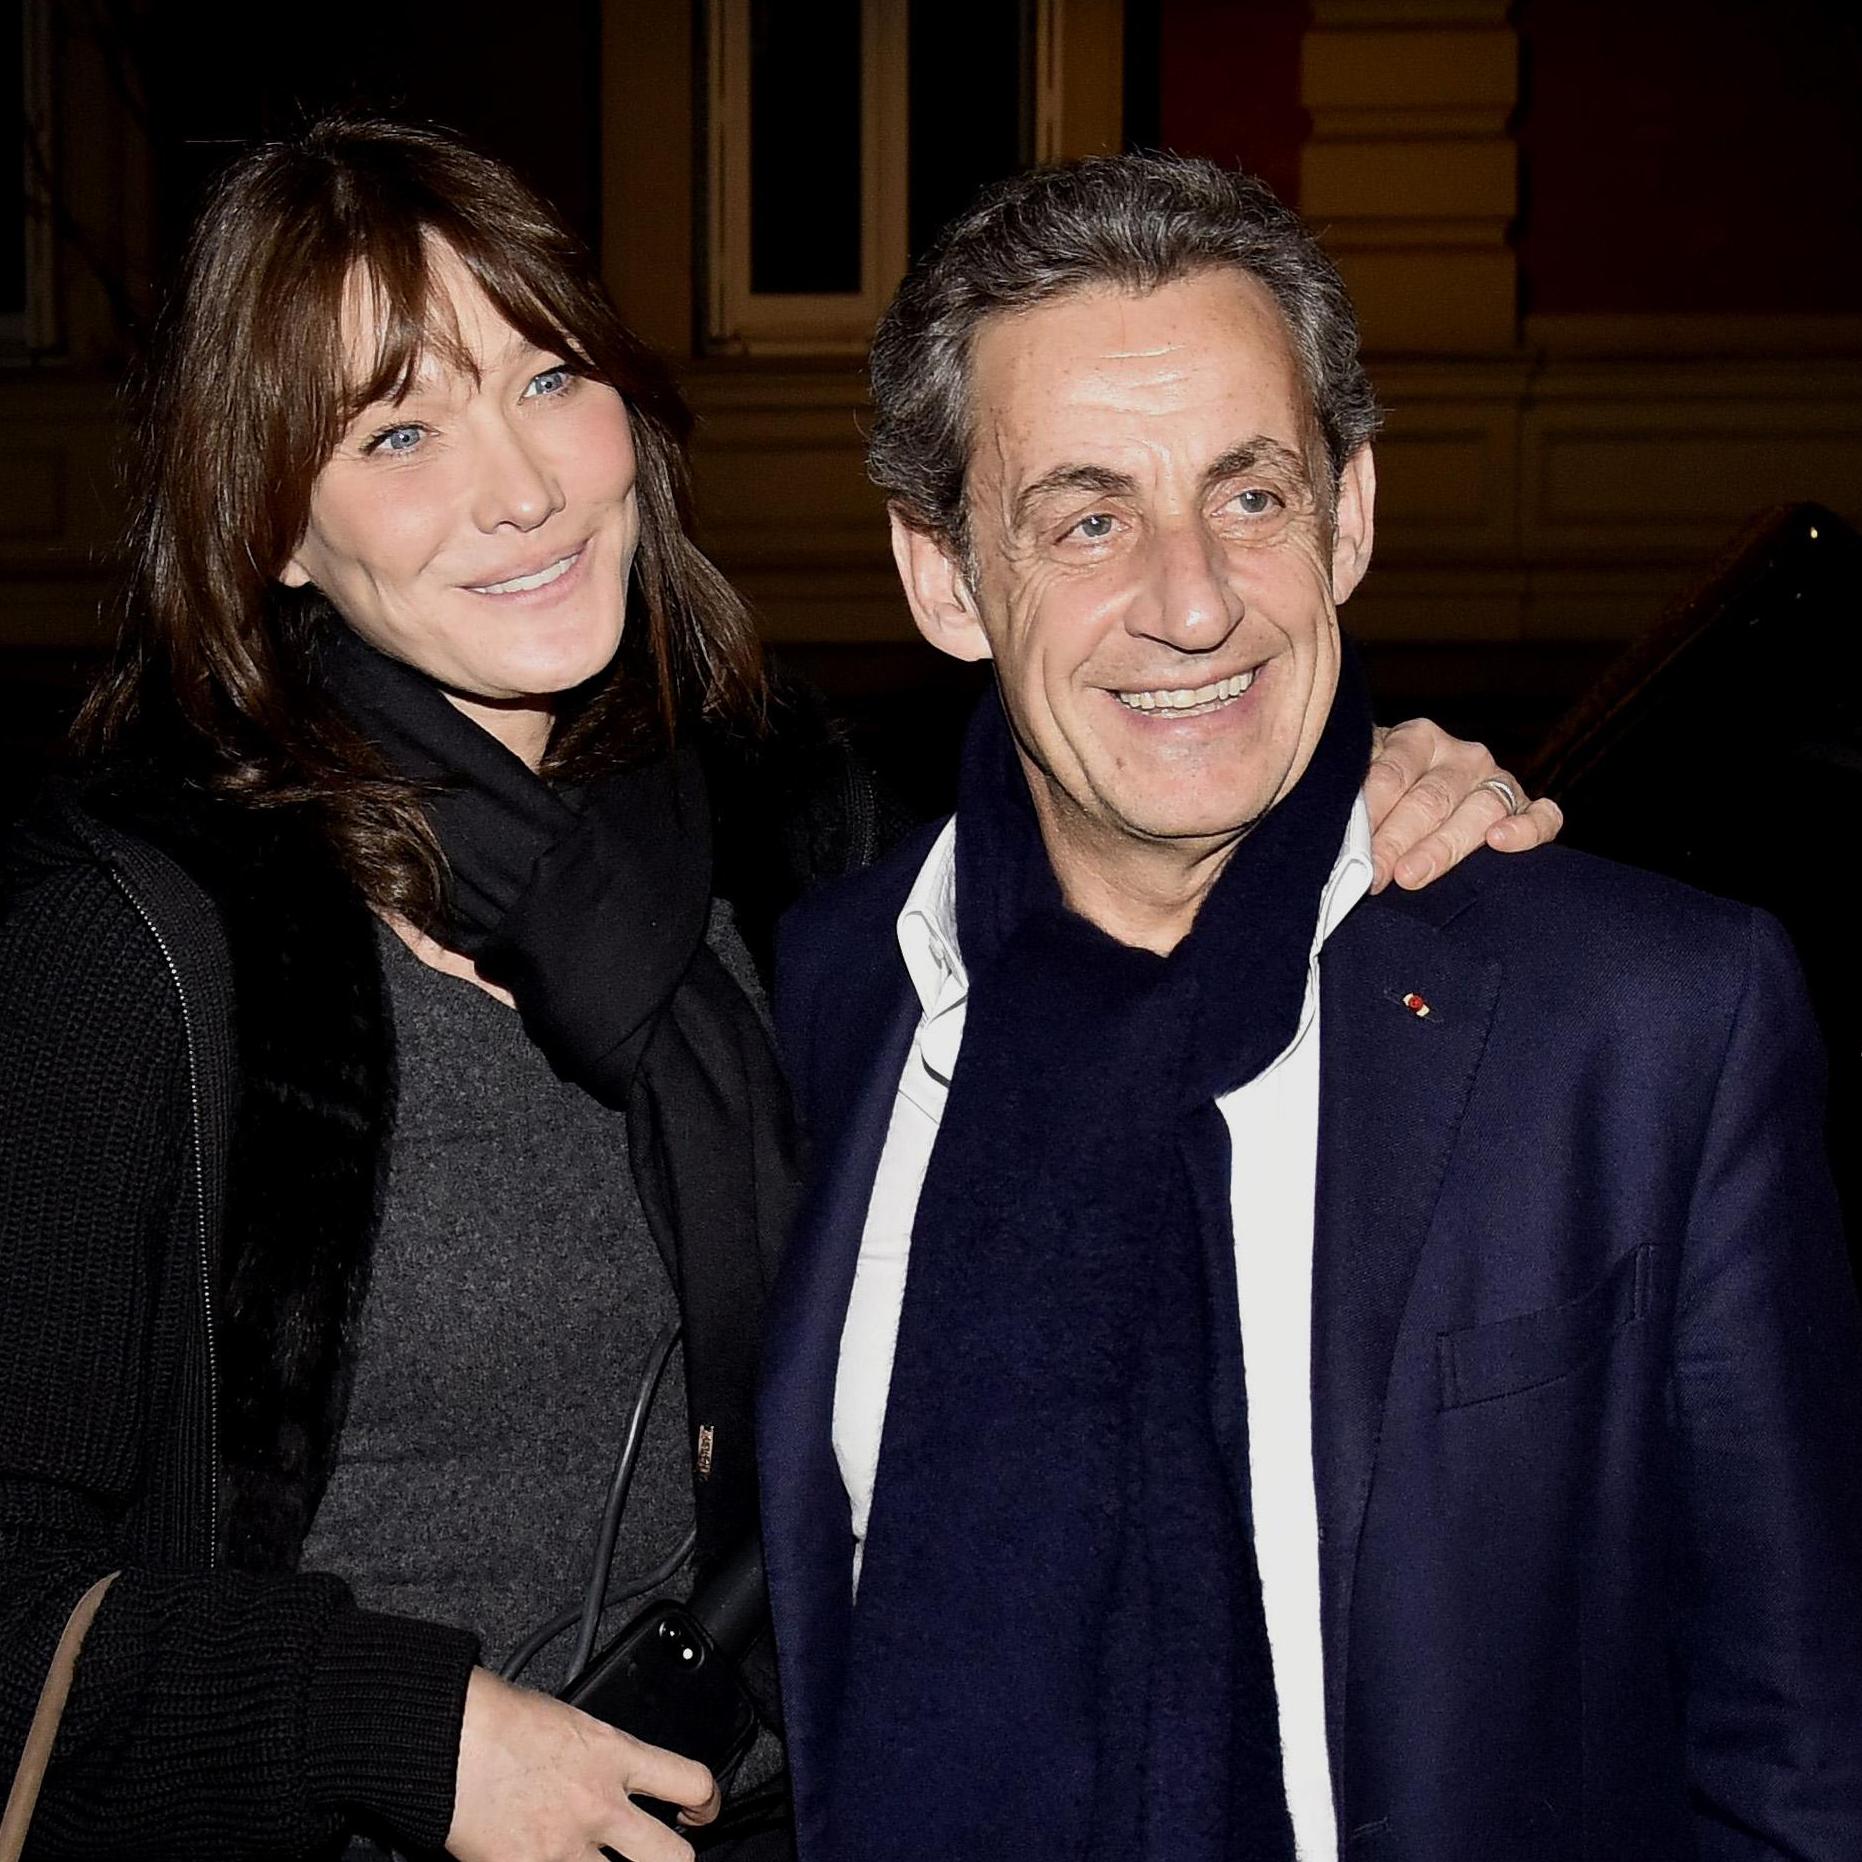 54-летняя жена экс-президента Франции Николя Саркози в платье-халате подчеркнула стройную фигуру и идеальные ножки